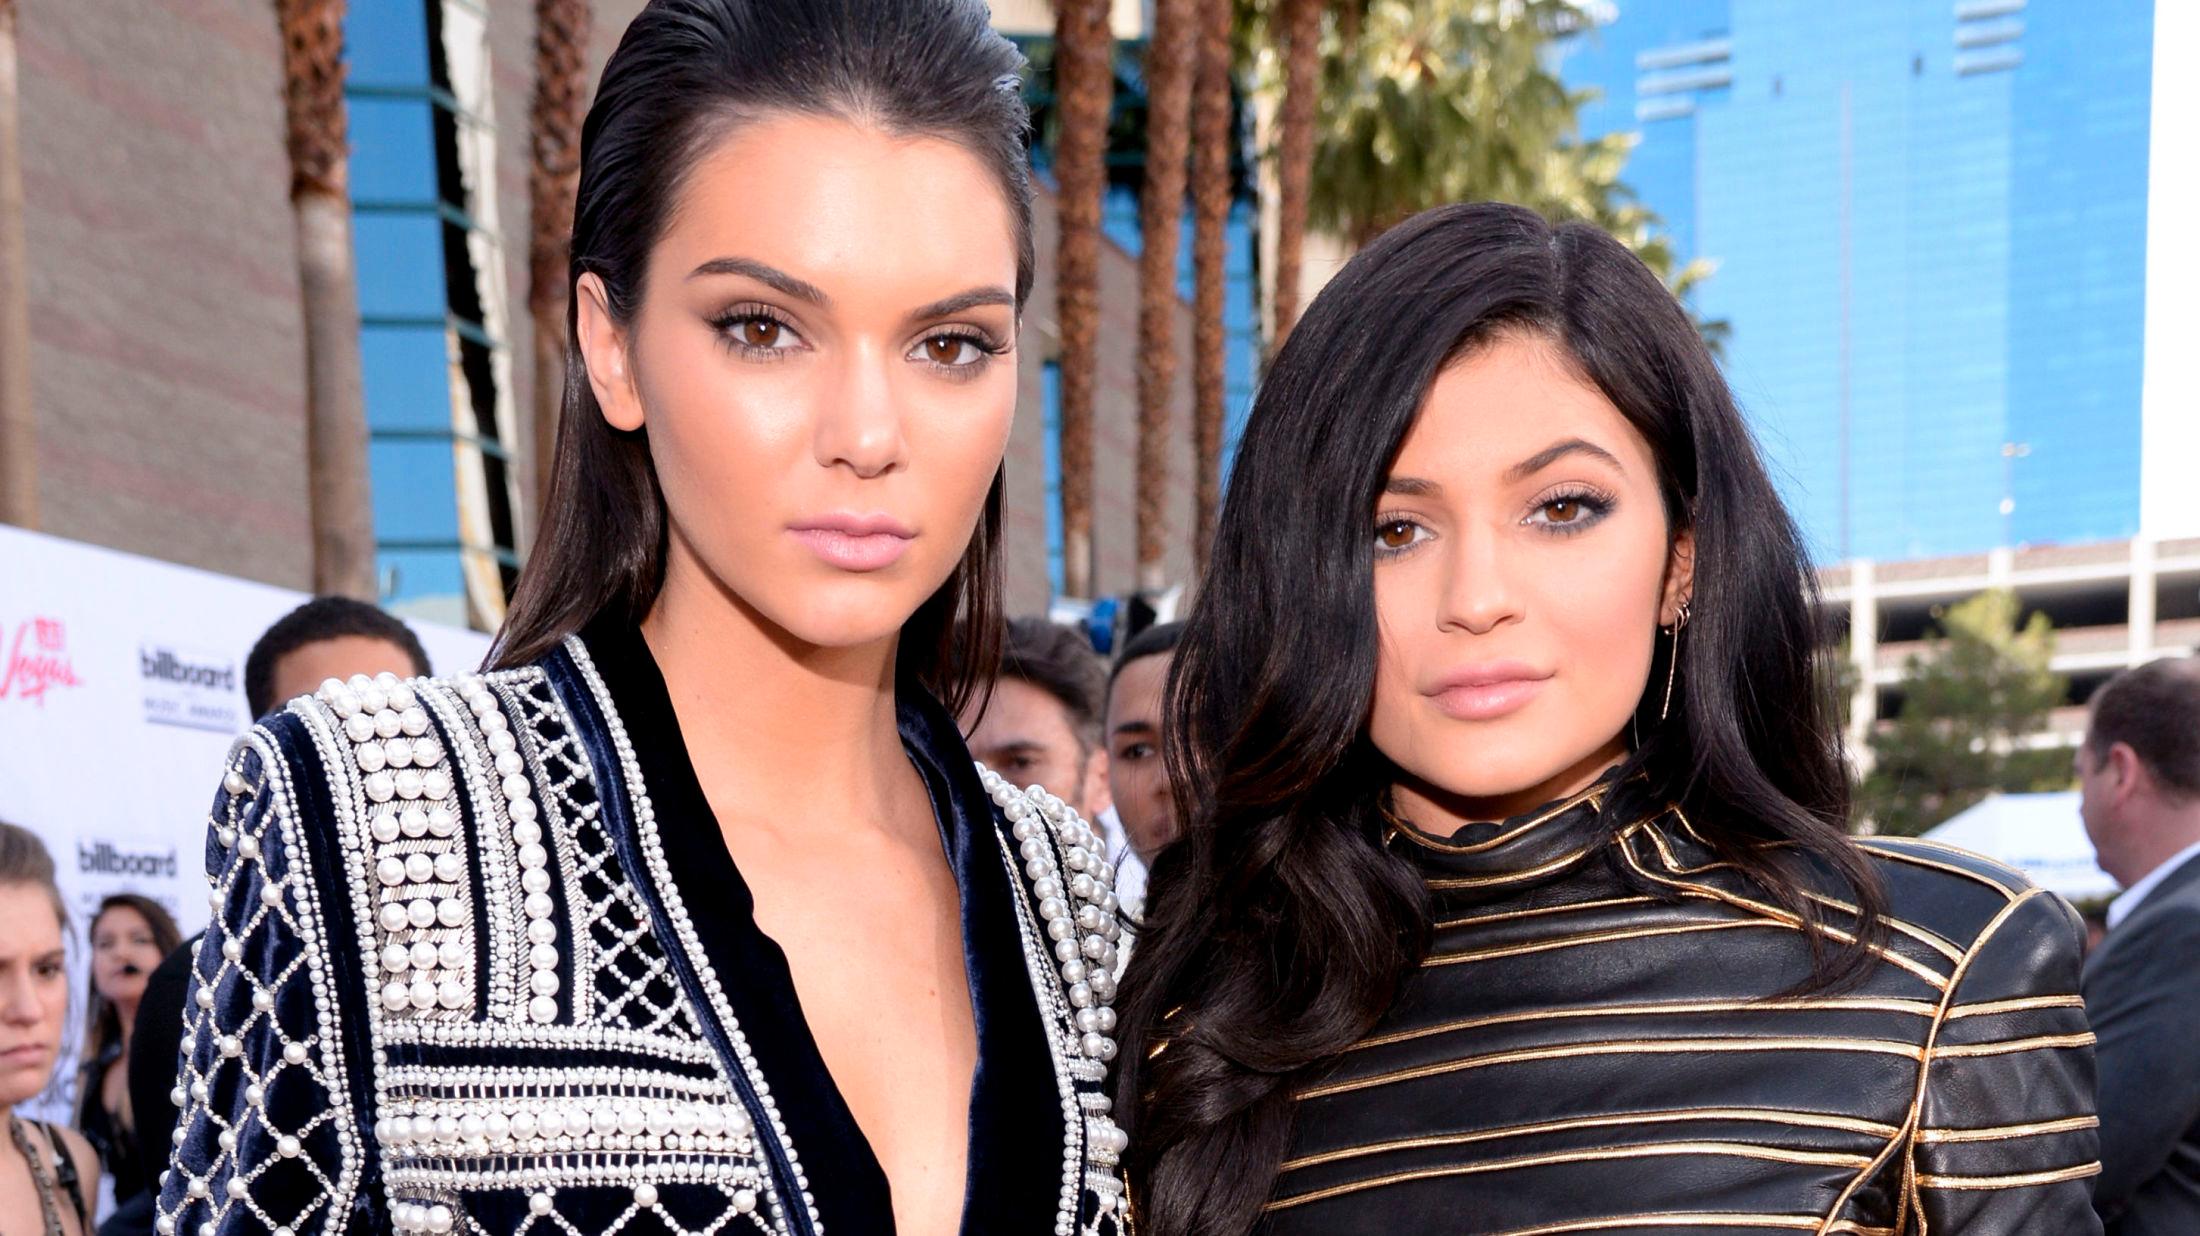 MOTE-SØSTRE: Kendall og Kylie Jenner har tidligere frontet luksusmerket Balmain, men nå er det deres eget merke som står i fokus. Foto: Getty Images